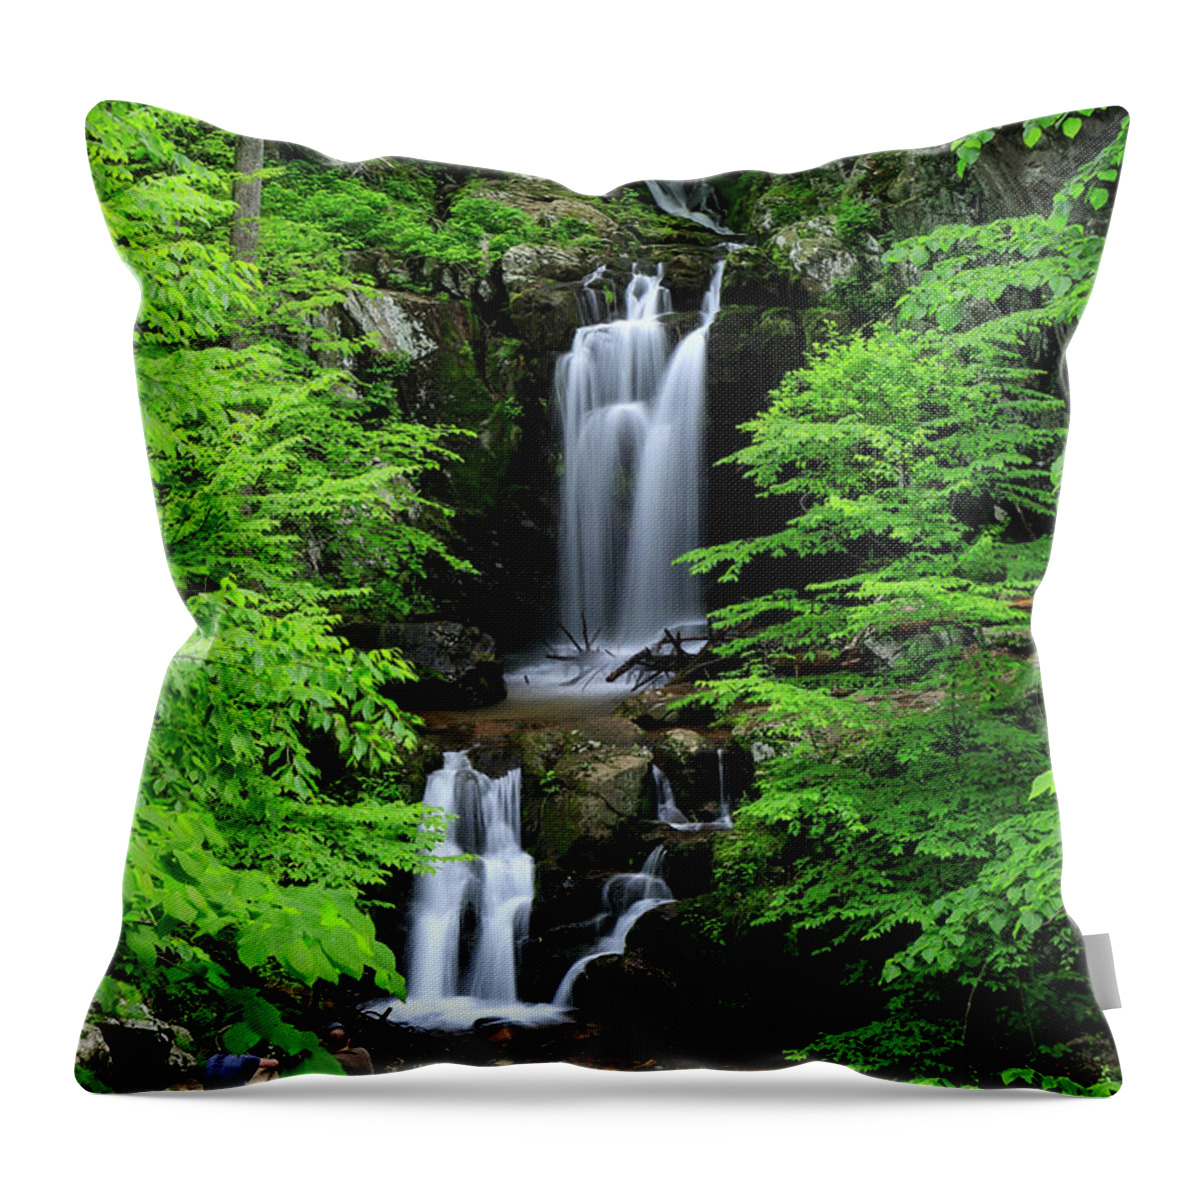 Upper Doyles River Falls Throw Pillow featuring the photograph Upper Doyles River Falls by Chris Berrier